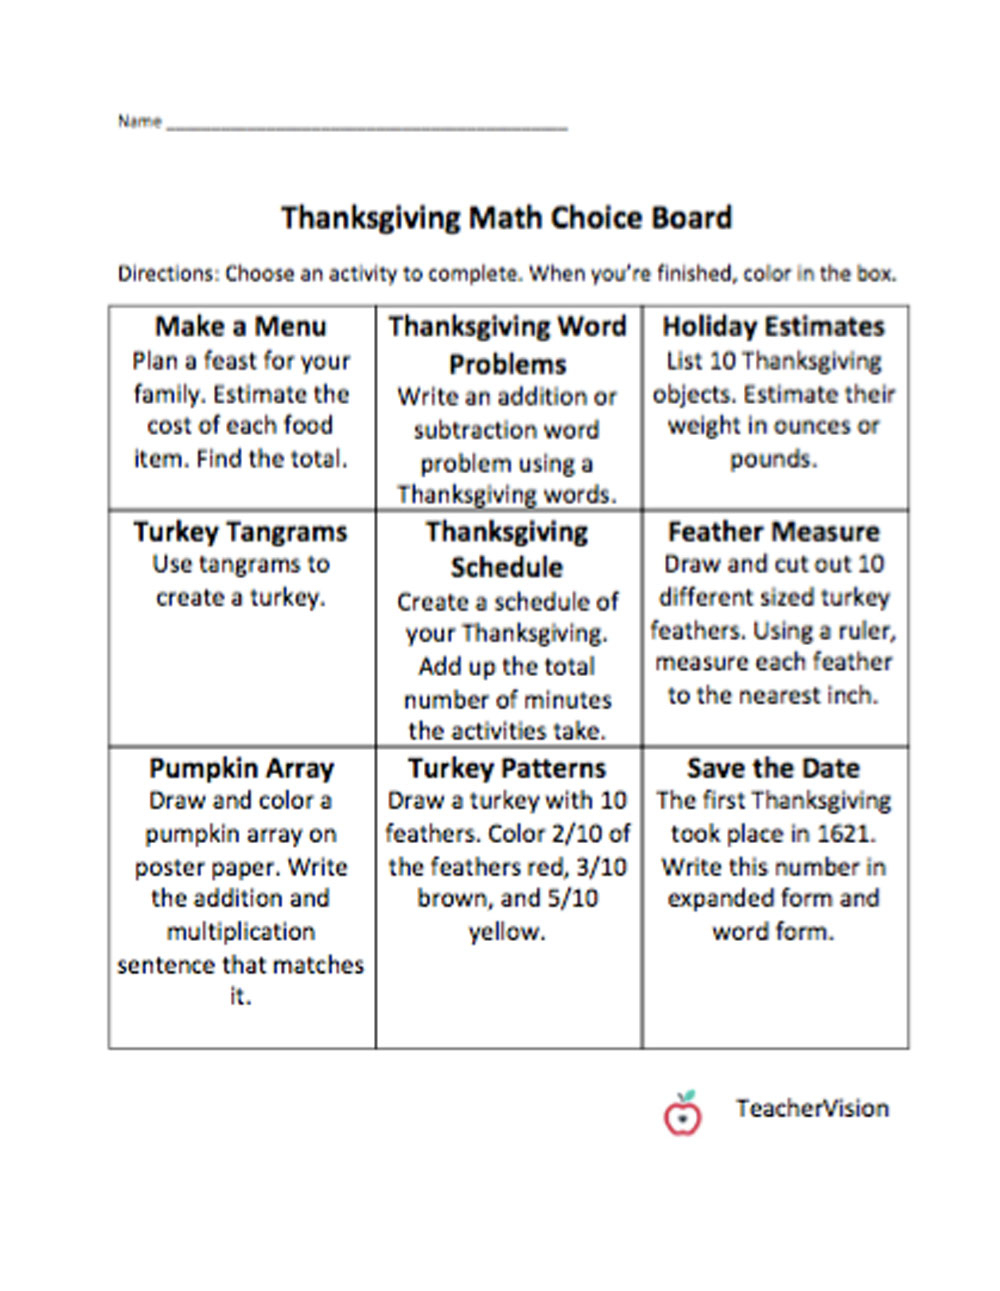 Math Thanksgiving Choice Board - Teachervision